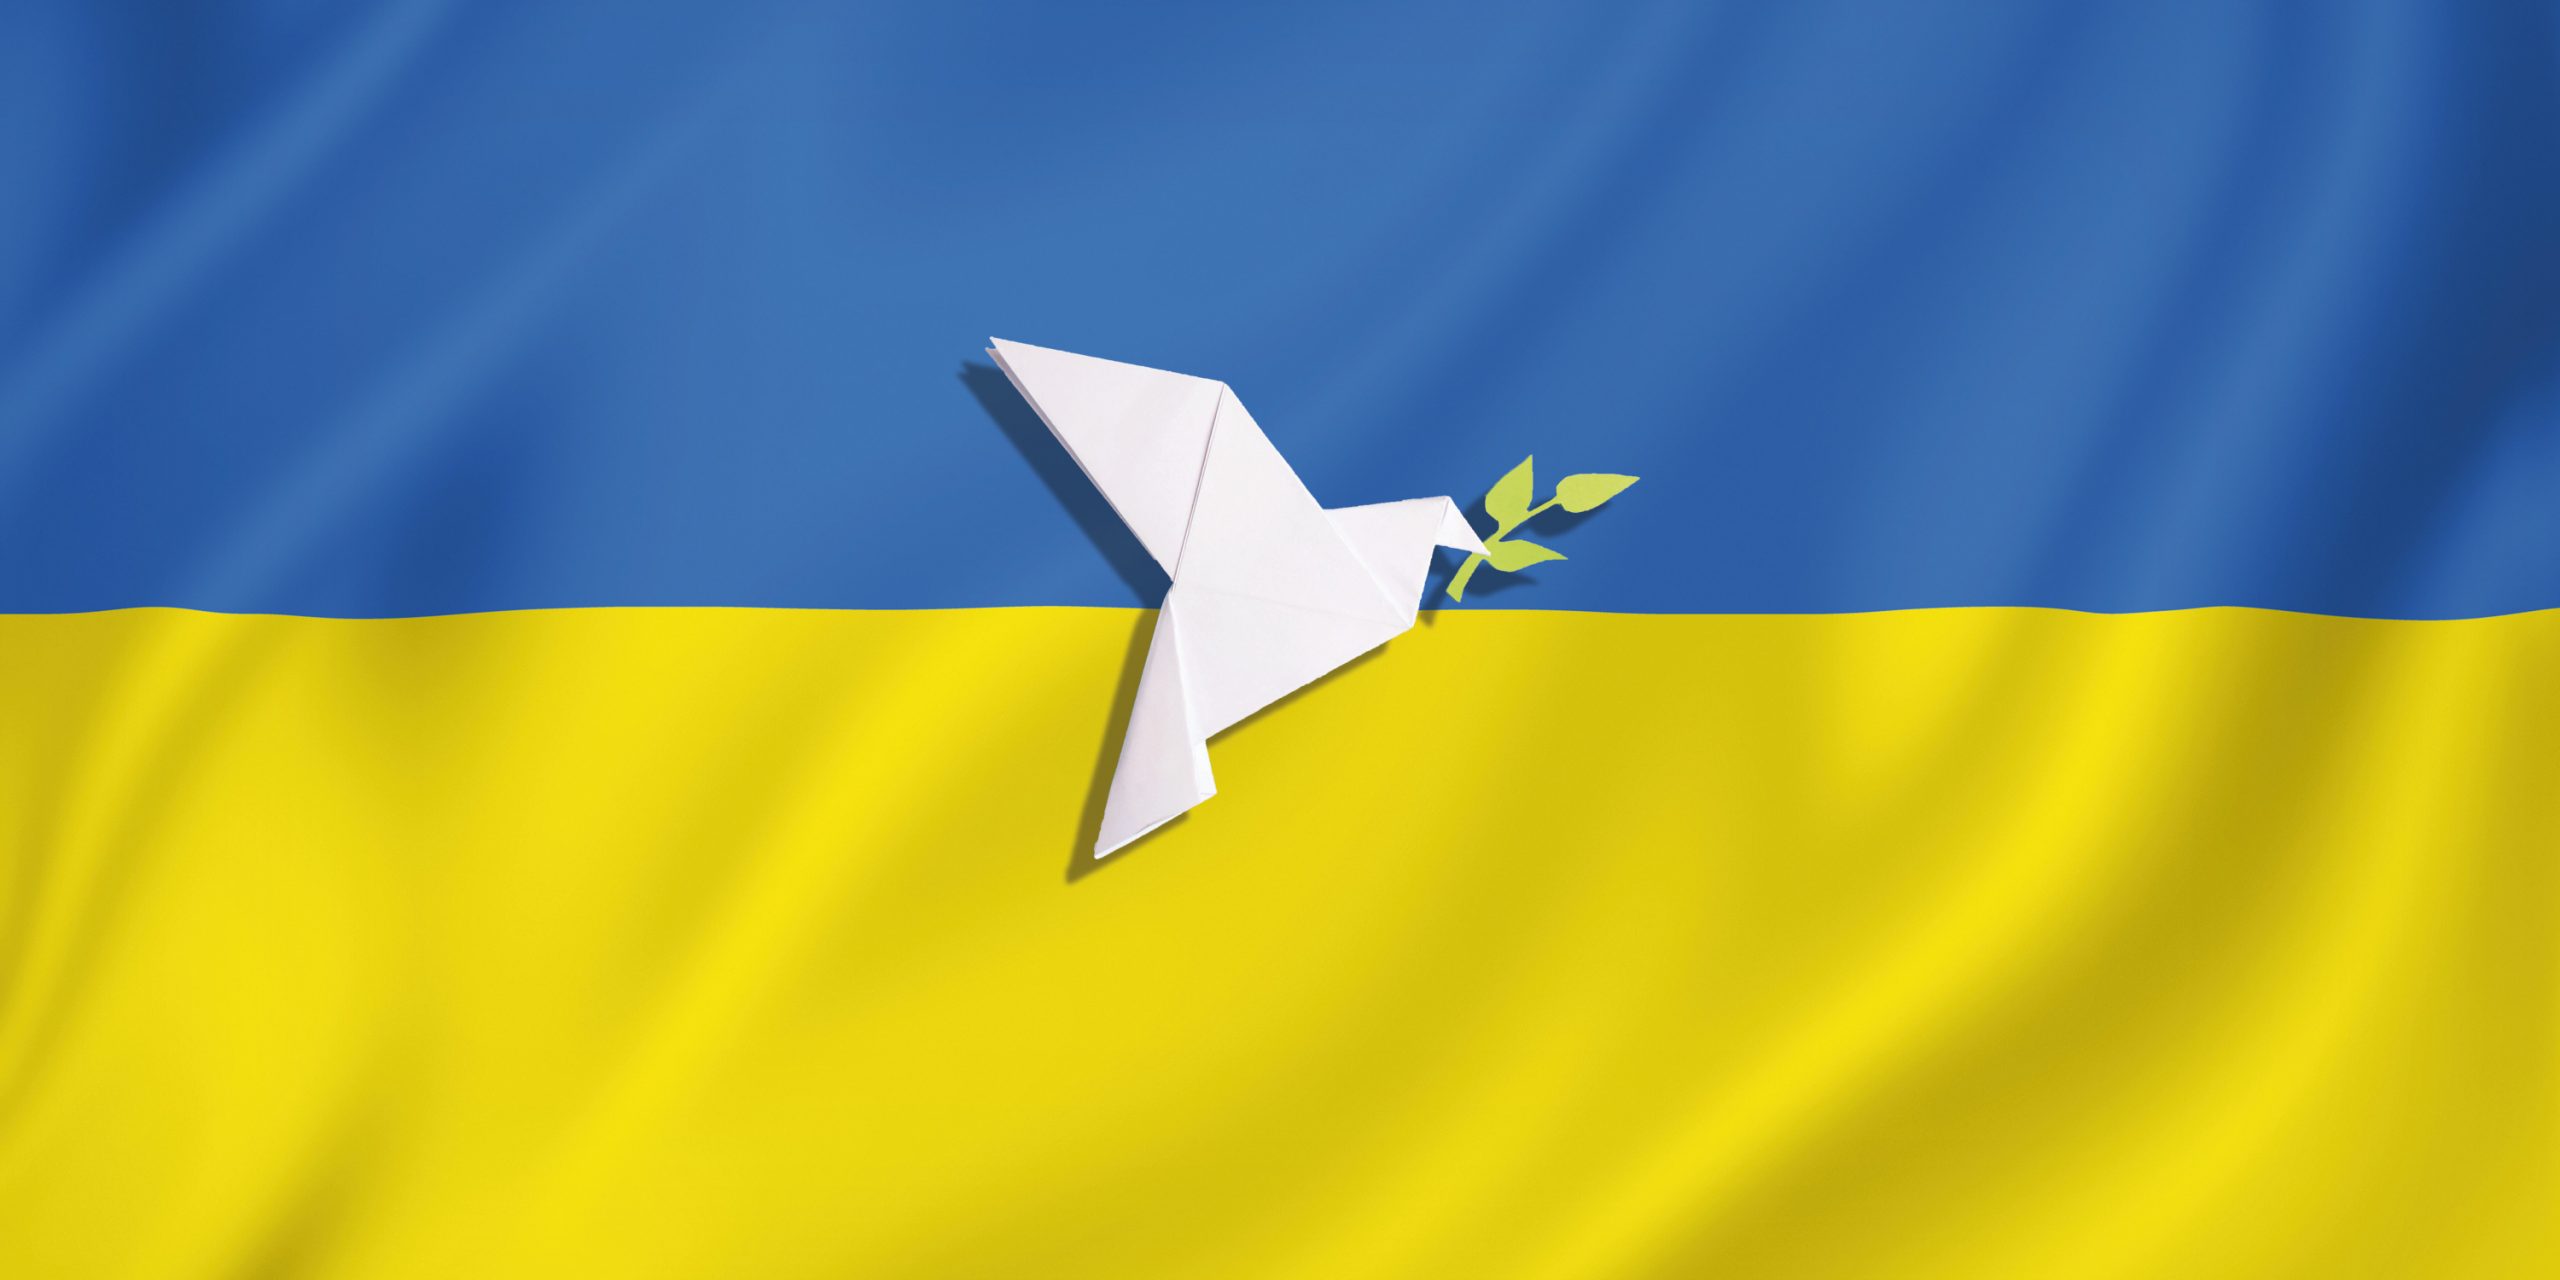 You are currently viewing Informationsmaterialien für ukrainische und russische Flüchtlinge